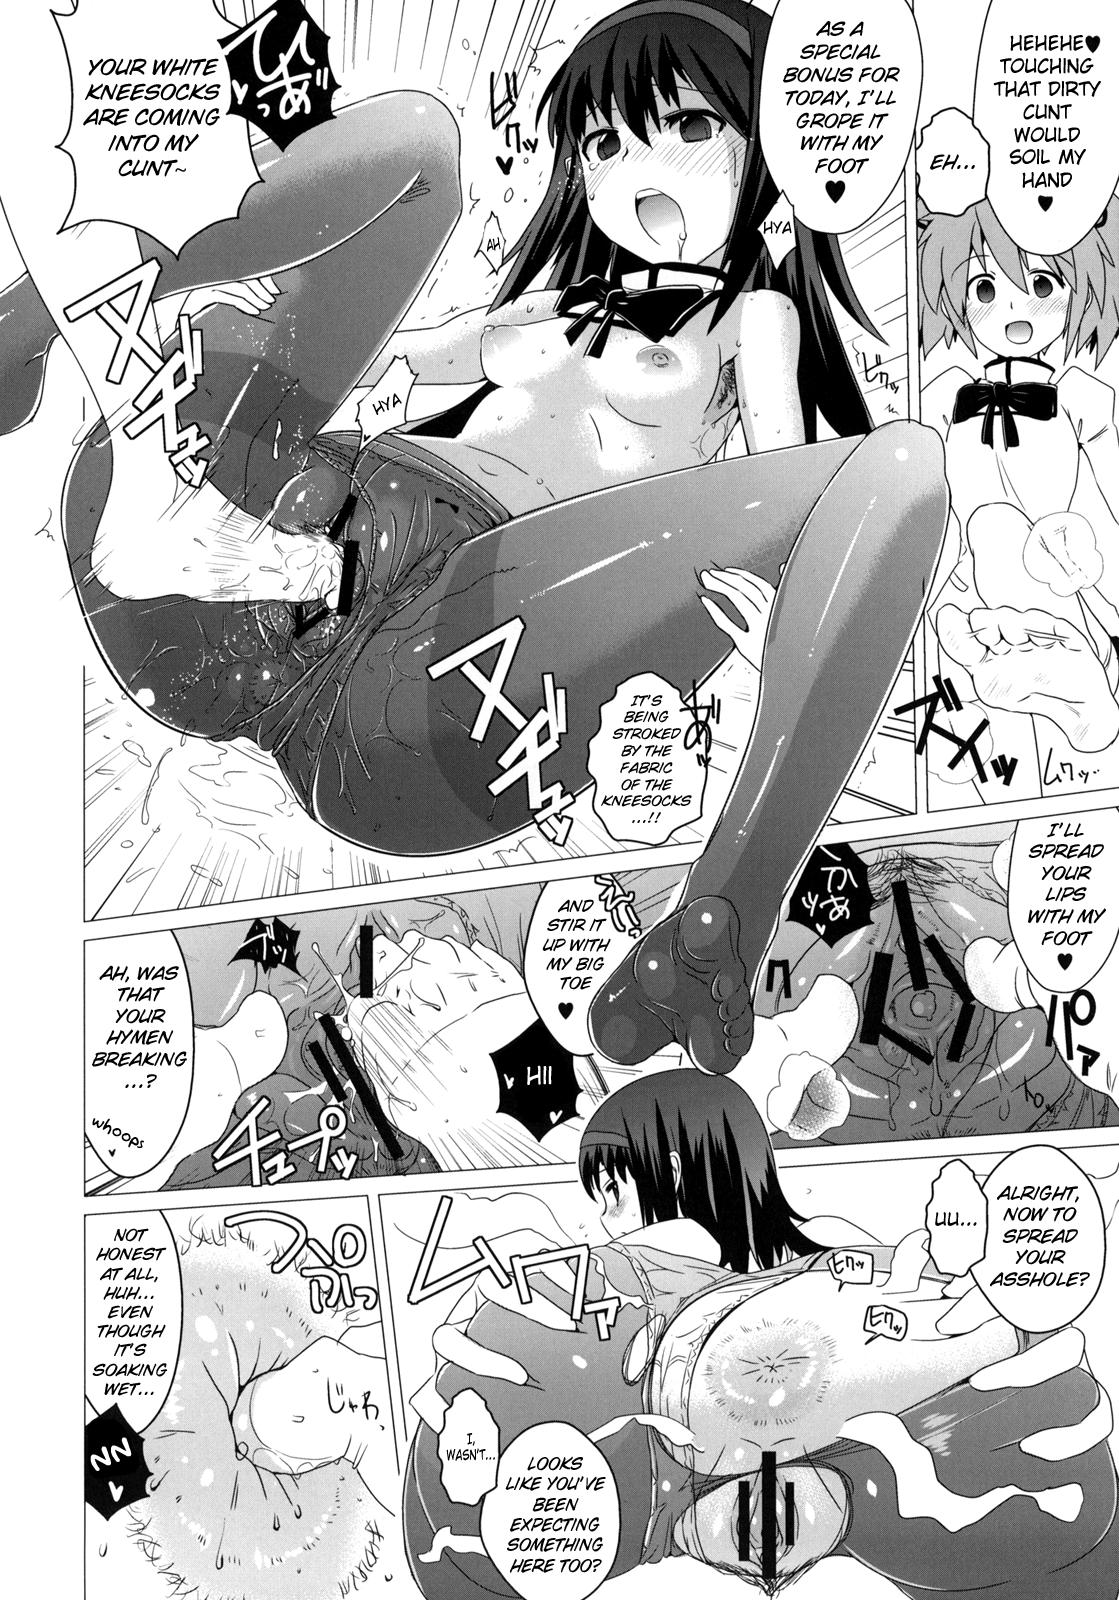 Teenage Porn Hentai Musume + Omake Paper - Puella magi madoka magica Pussy Orgasm - Page 11